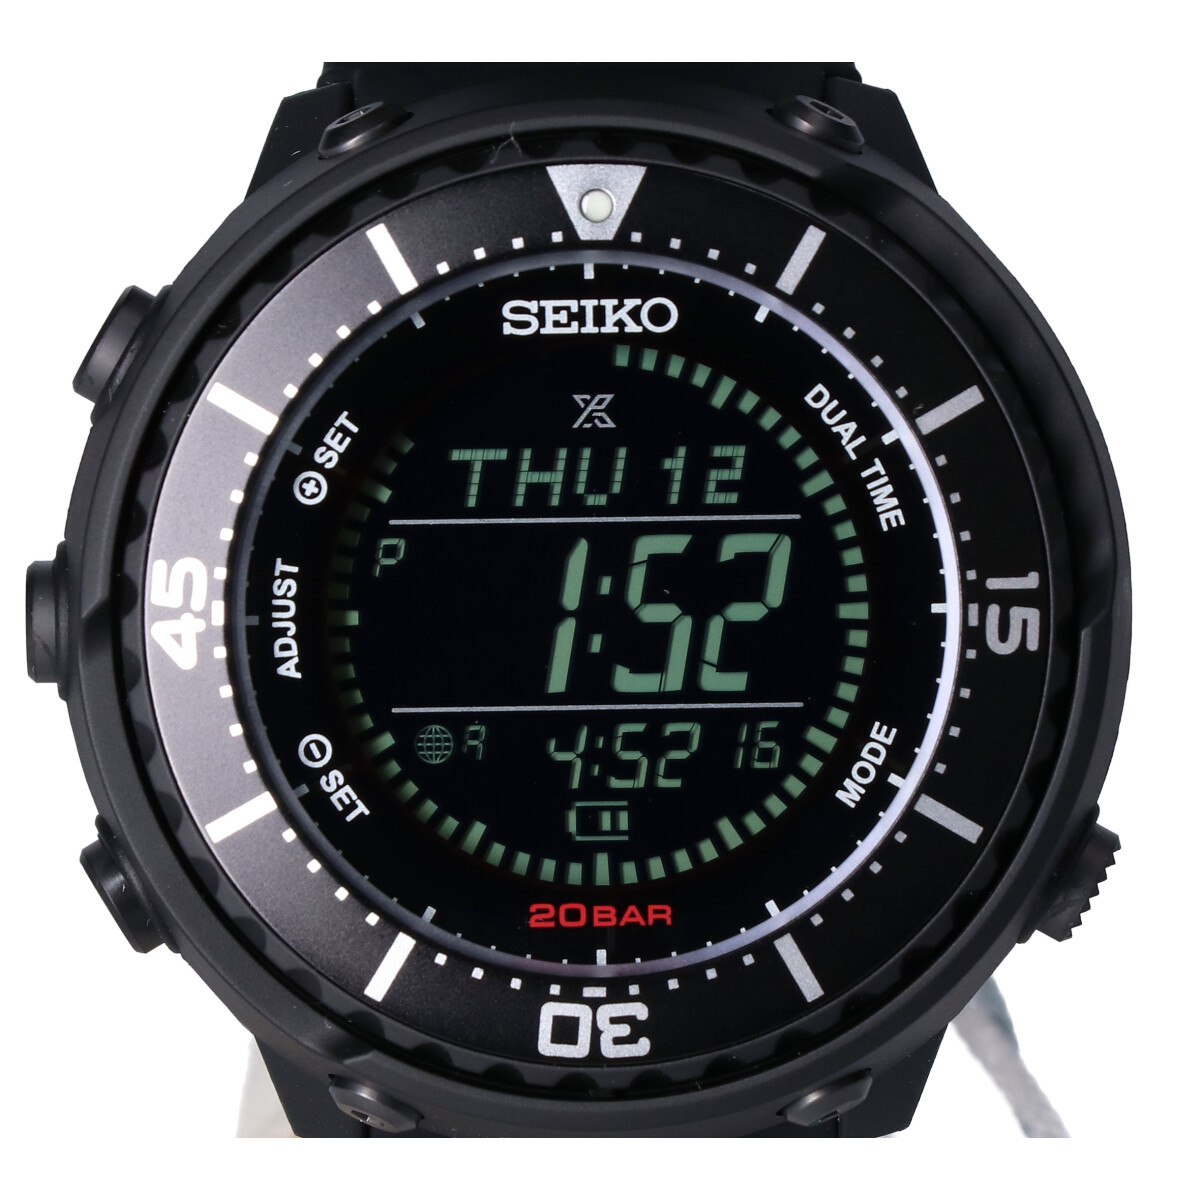 セイコーのSBEP037-UM03 フィールドマスター アーバンリサーチエクスクルーシヴ ソーラー 腕時計の買取実績です。